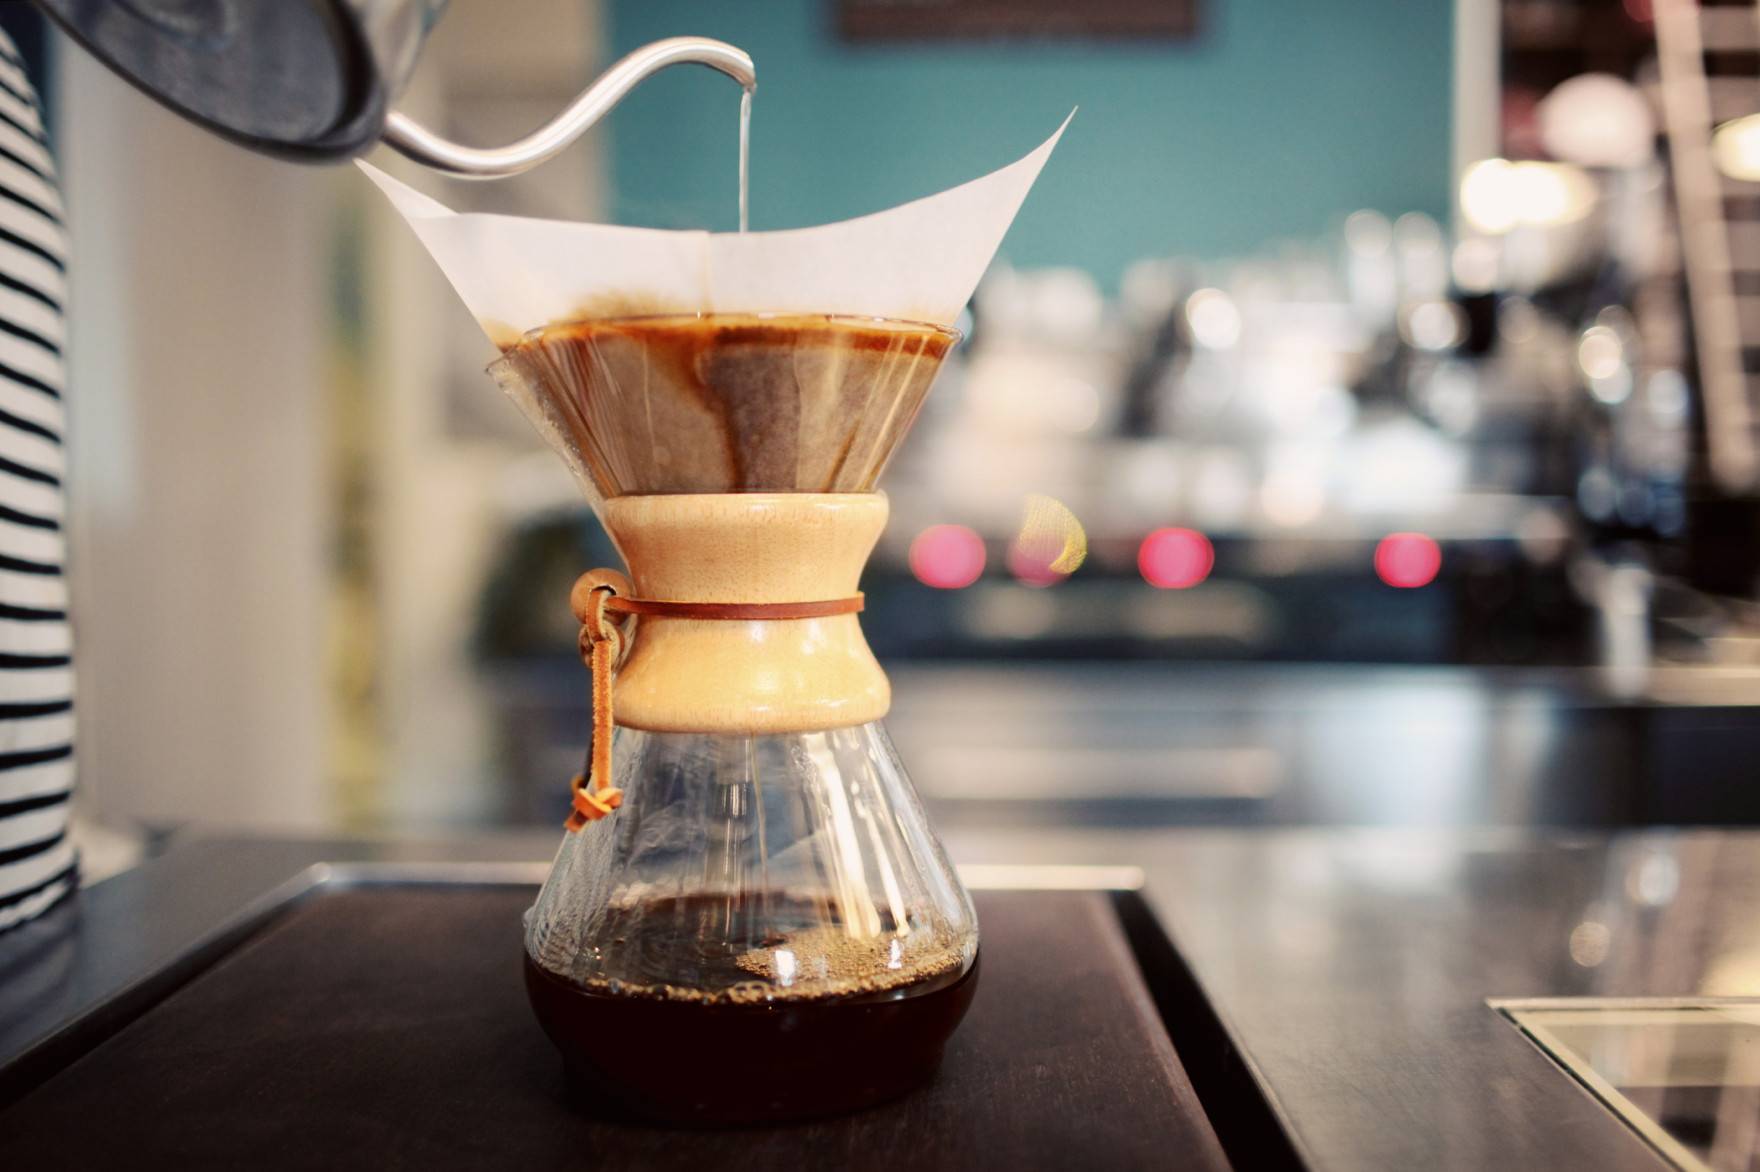 Всё, что вы хотели знать о кофе: польза и вред популярного напитка